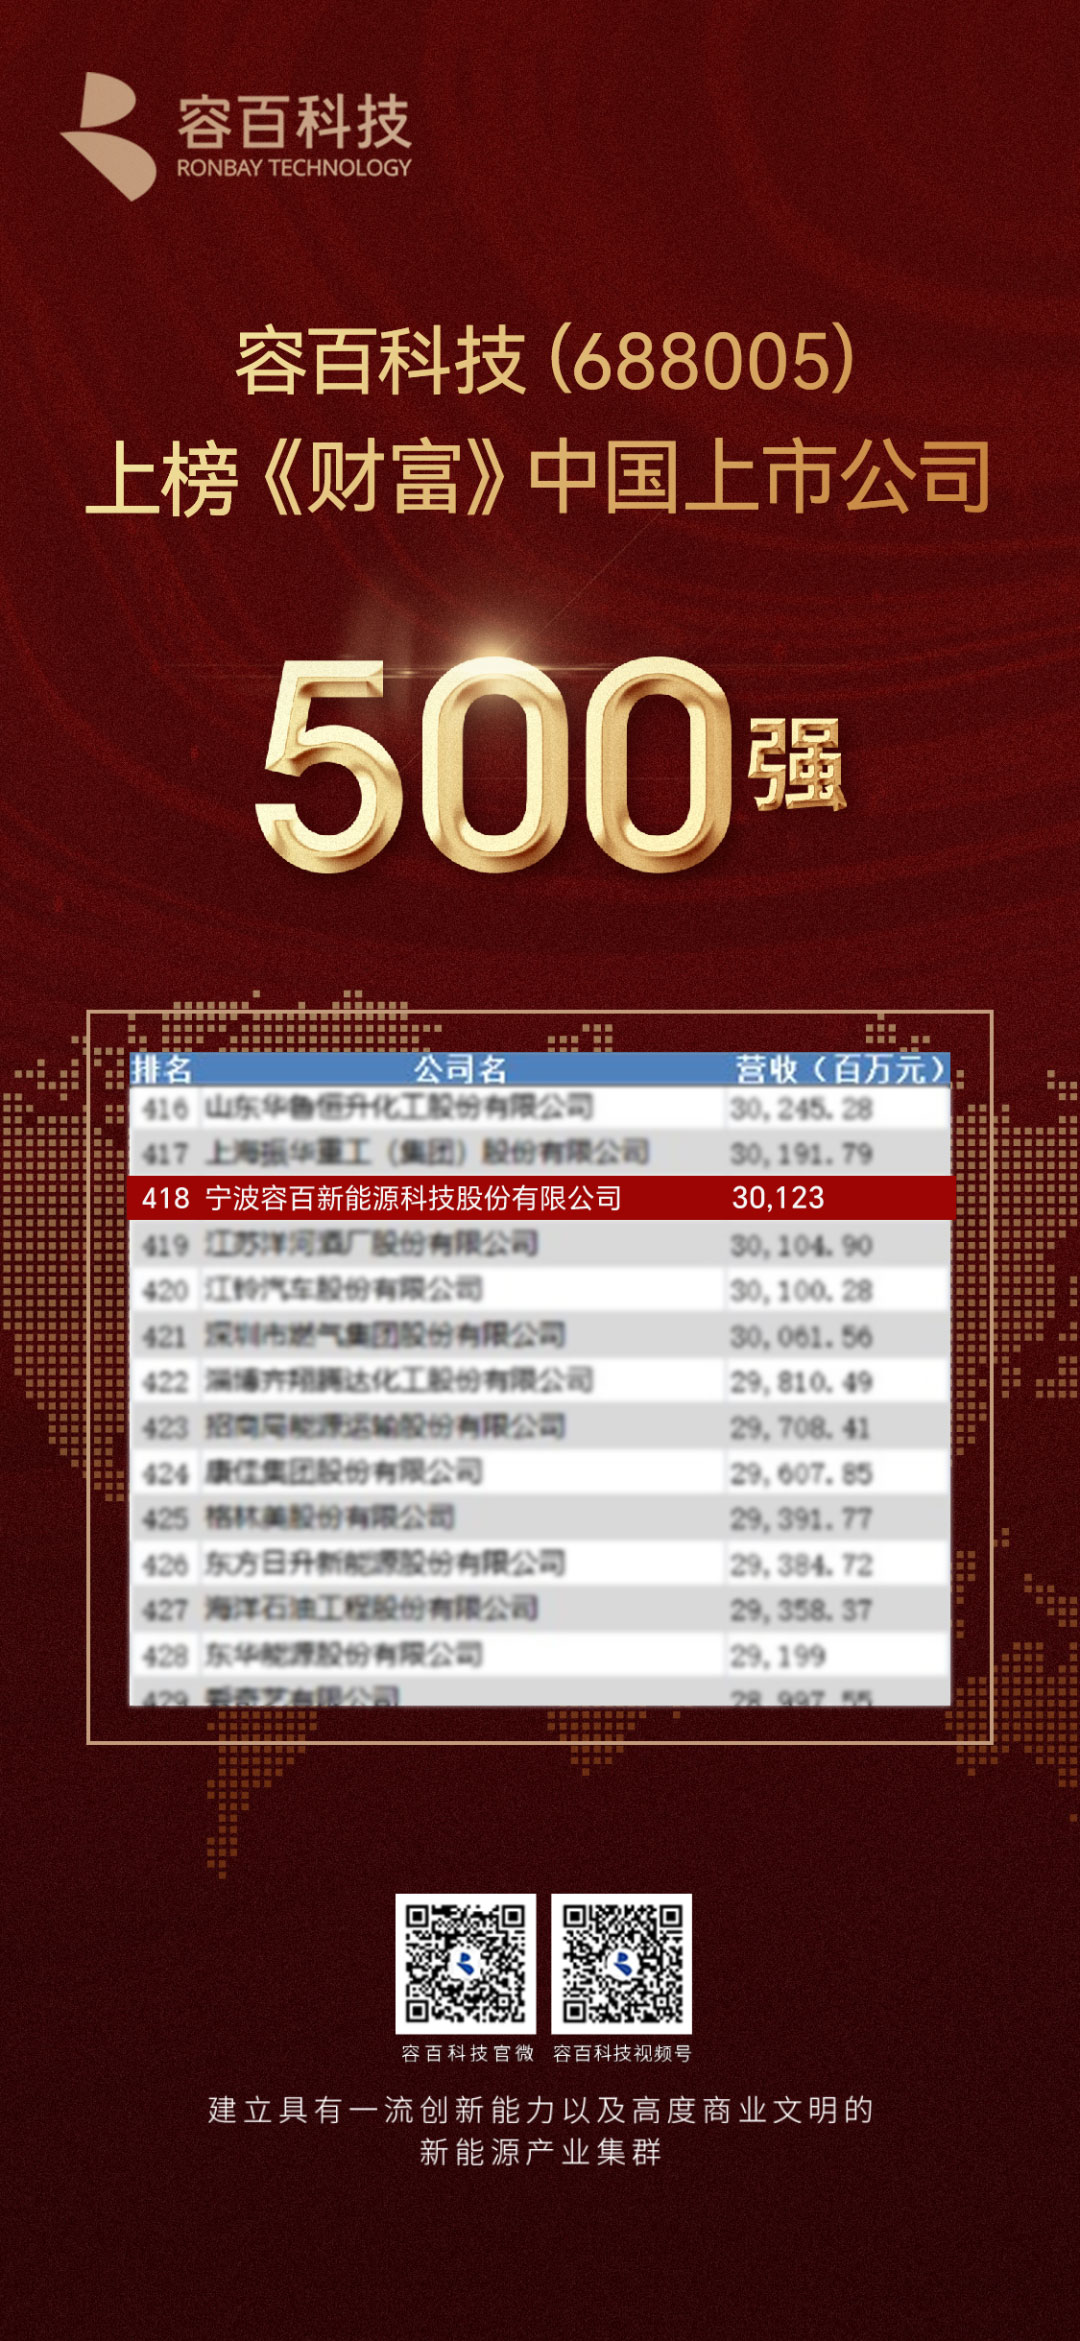 年度营业收入301.23亿！ 容百科技首次登榜《财富》中国上市公司500强